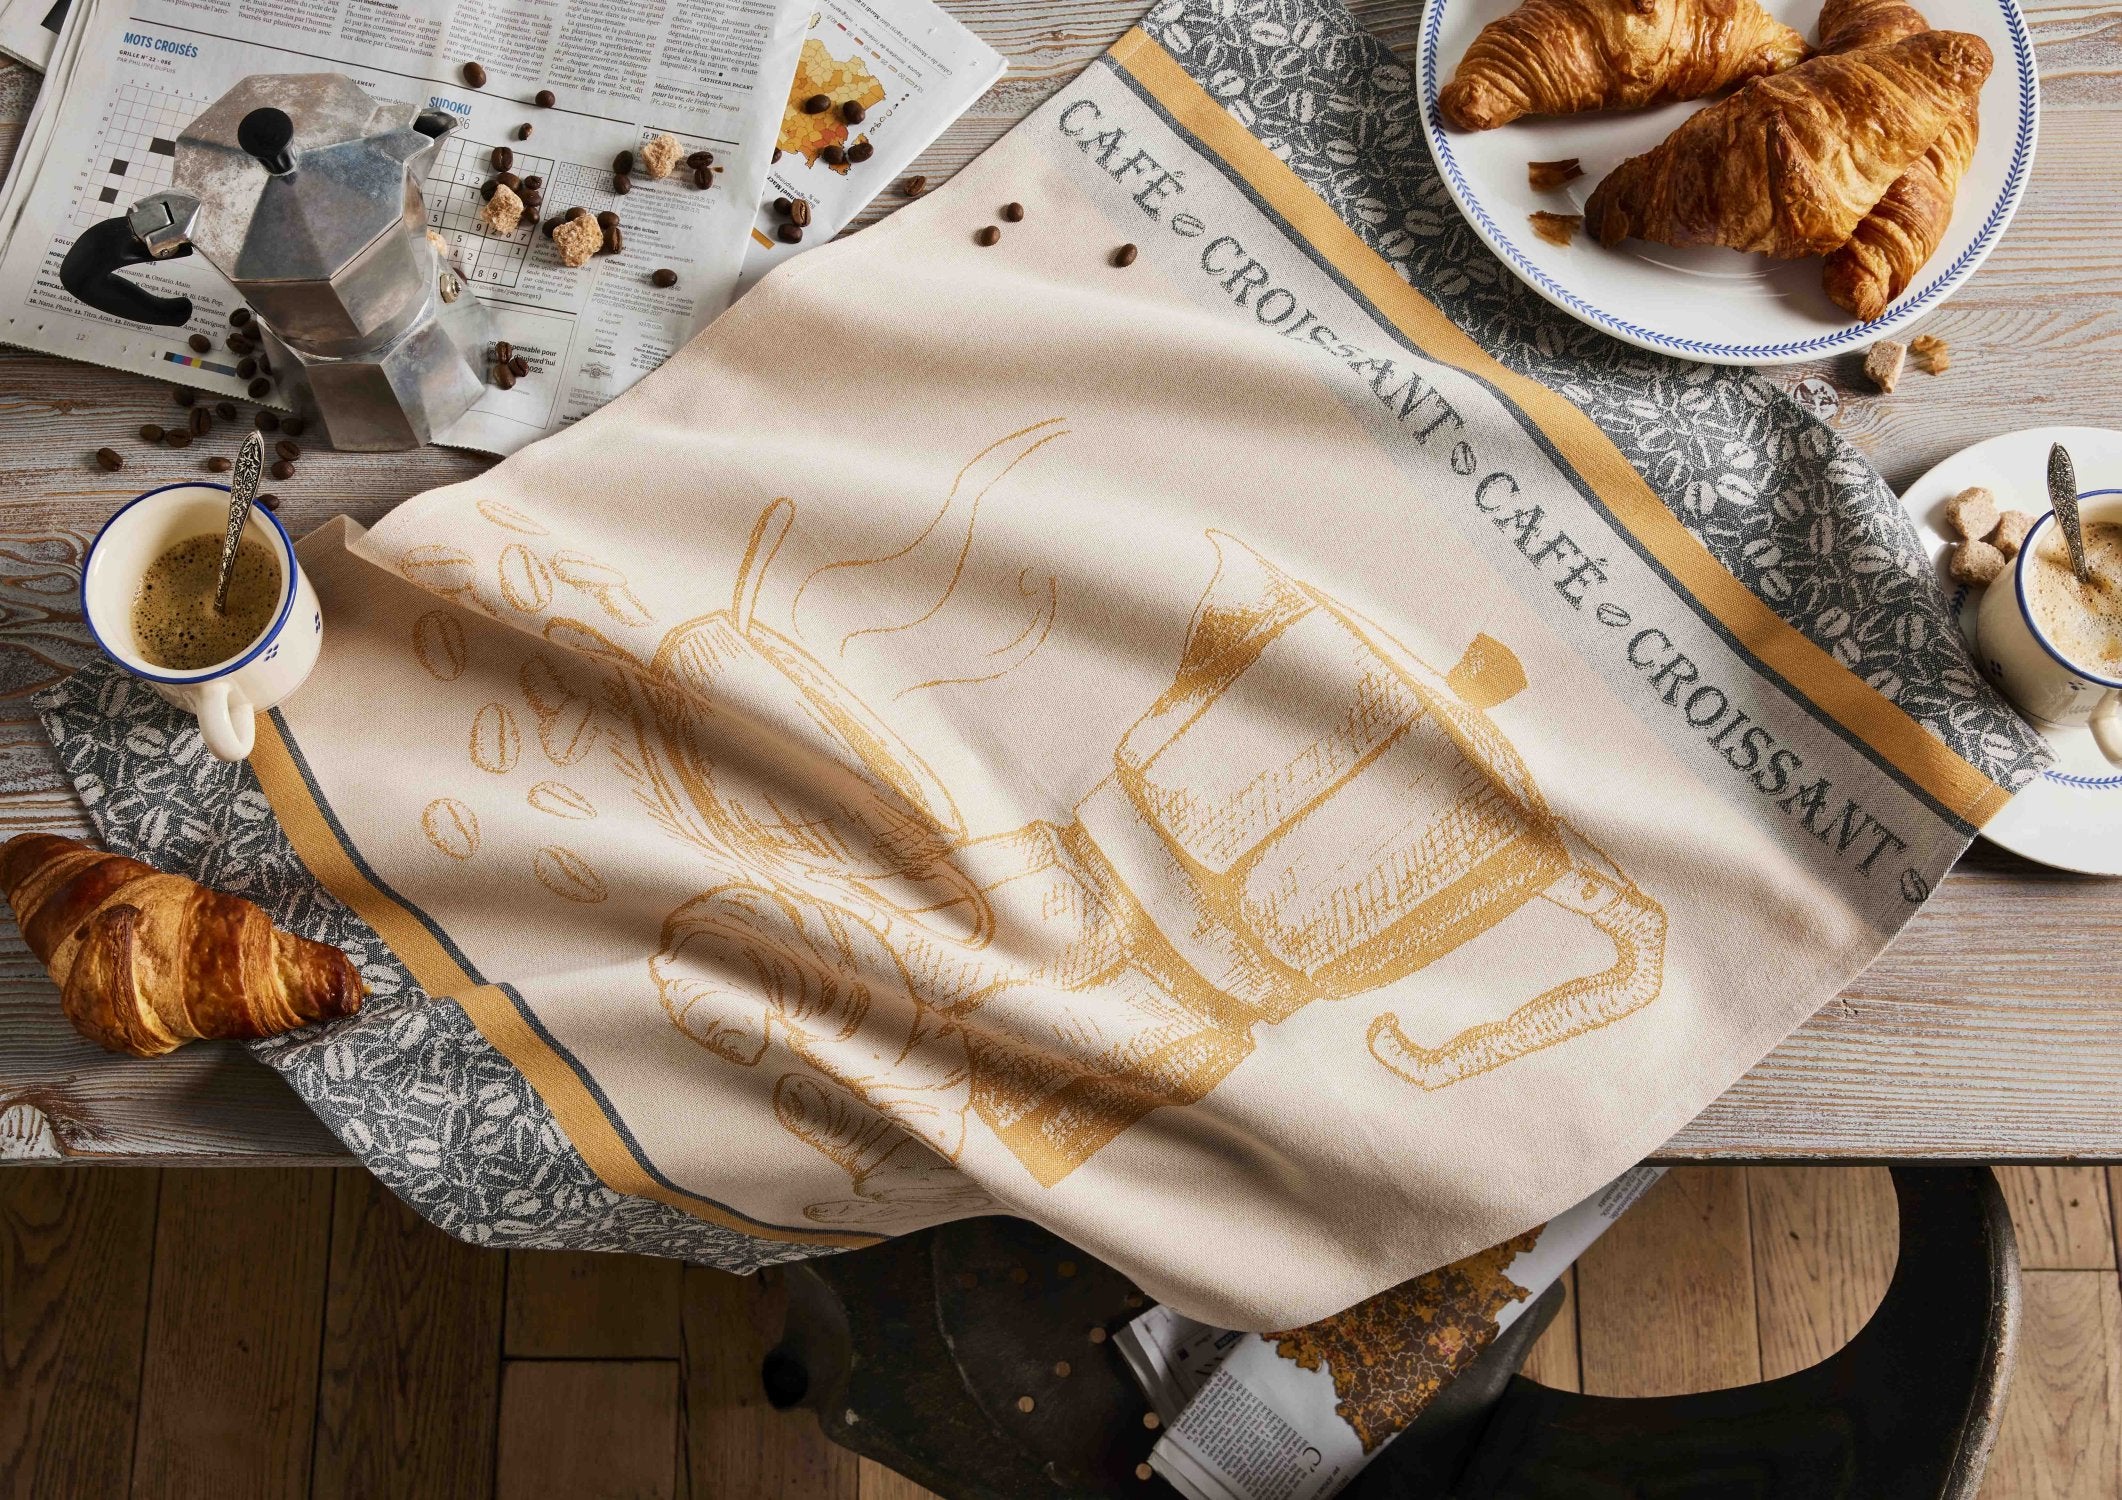 Coucke " Café Croissant", Woven cotton tea towel. Designed in France.